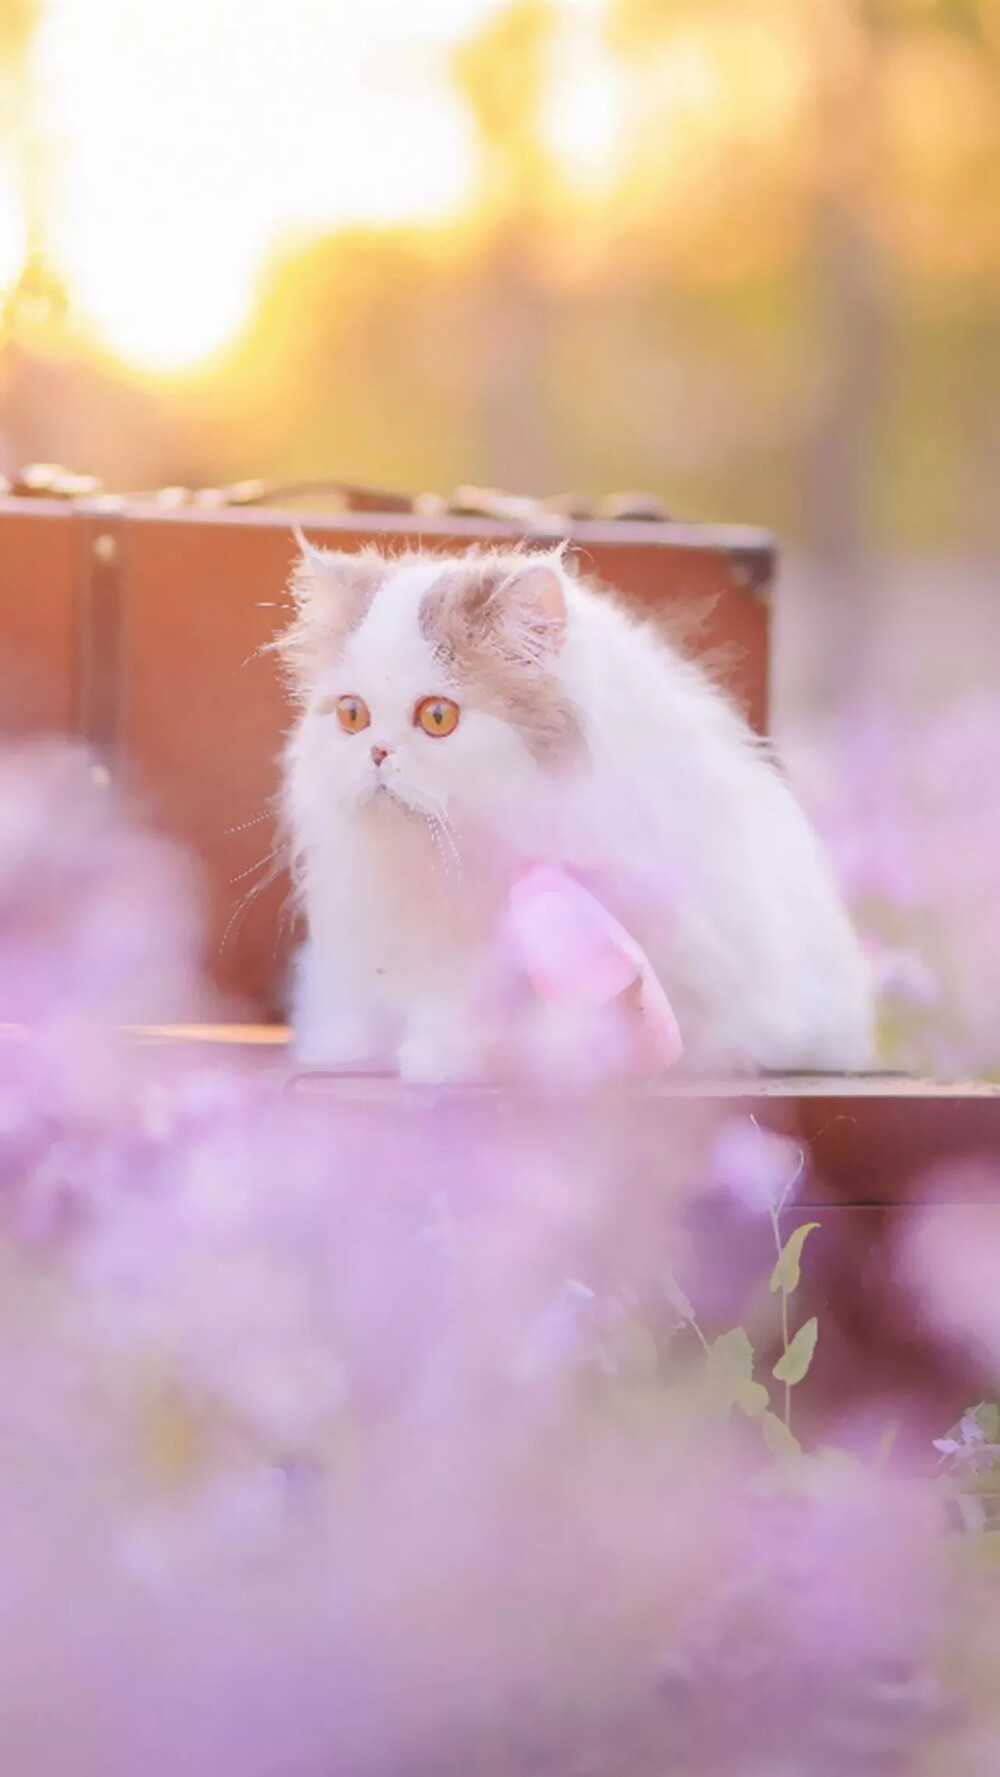 【 尐萌宠 】梦幻系列~粉色系~意境中的猫(^･ｪ･^)
ps:抱图点赞Yeah~